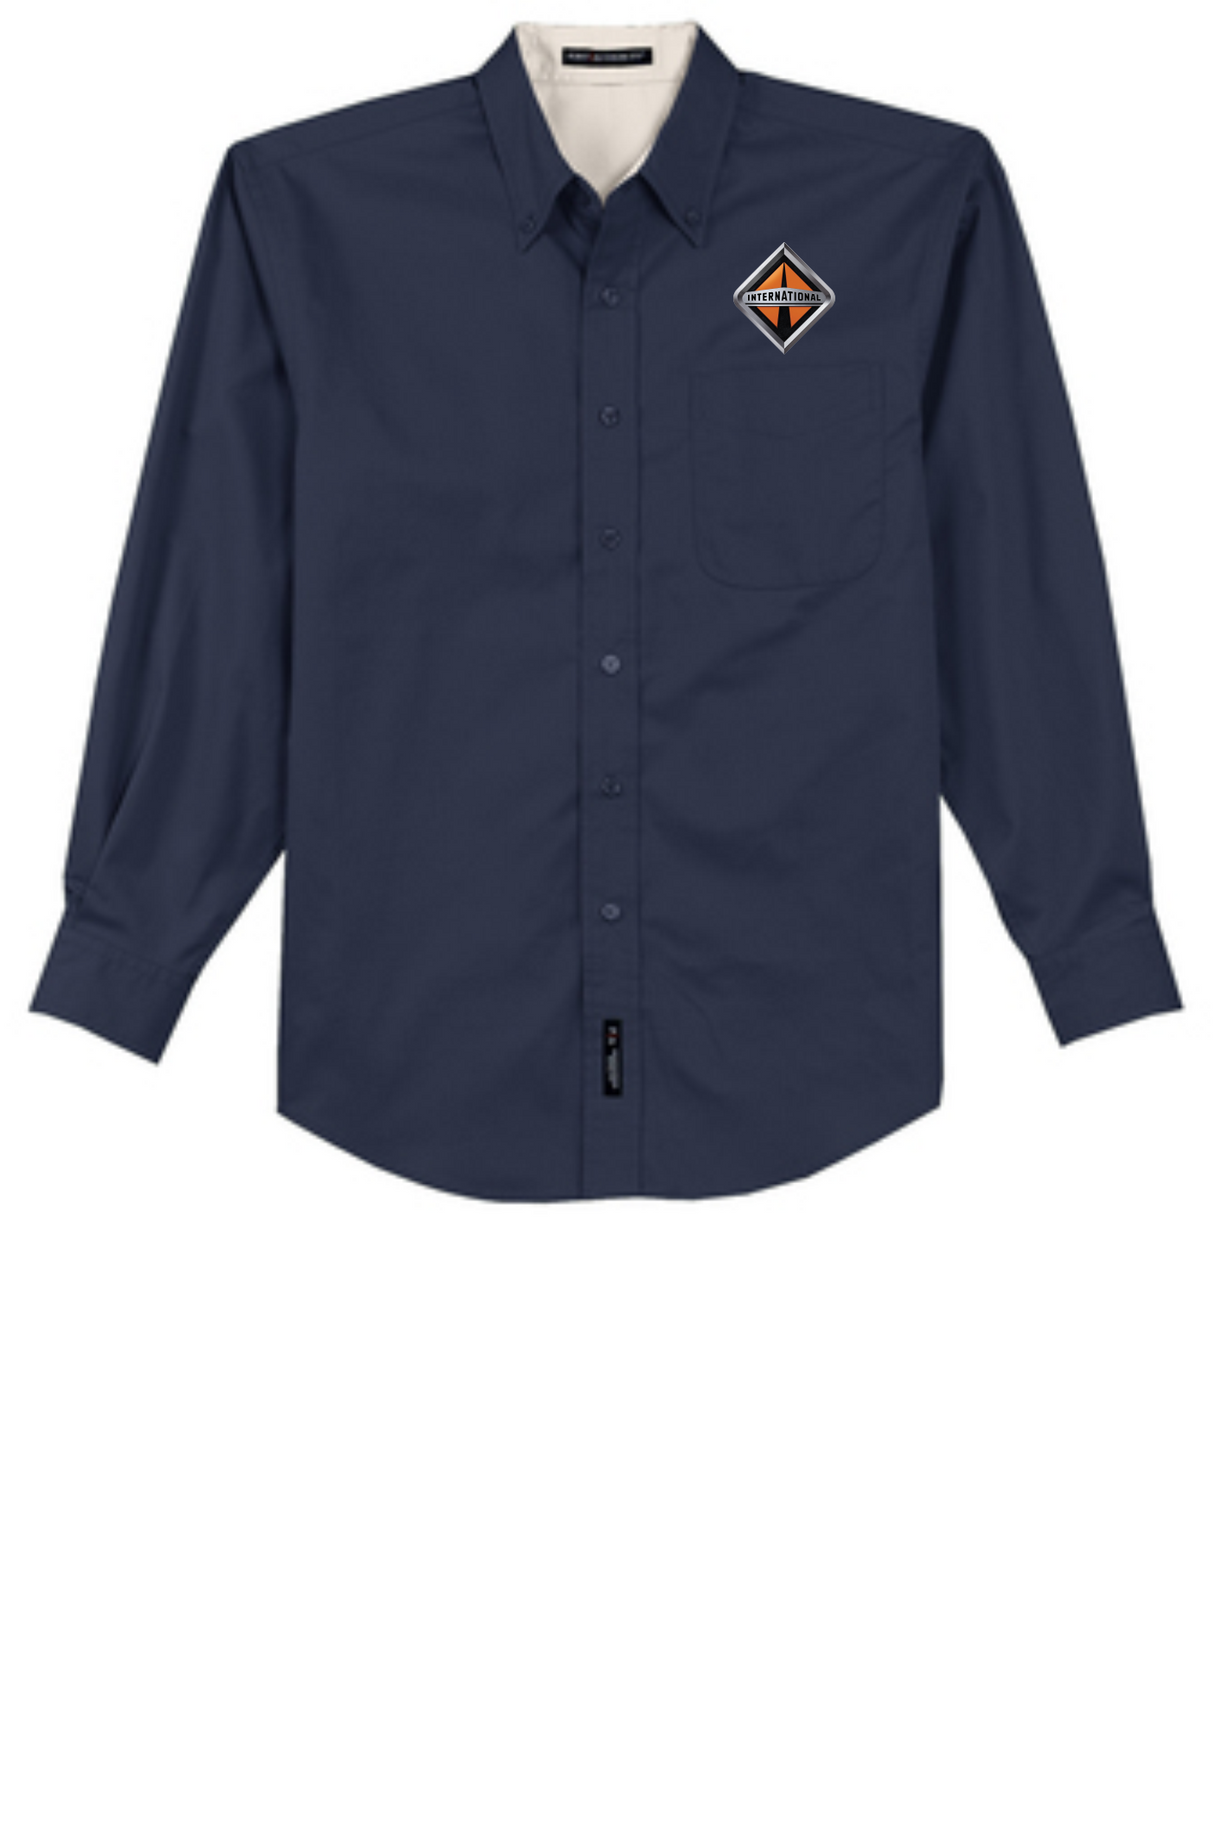 Border International Diamond Logo Long-Sleeve Easy Care Full-Button Shirt